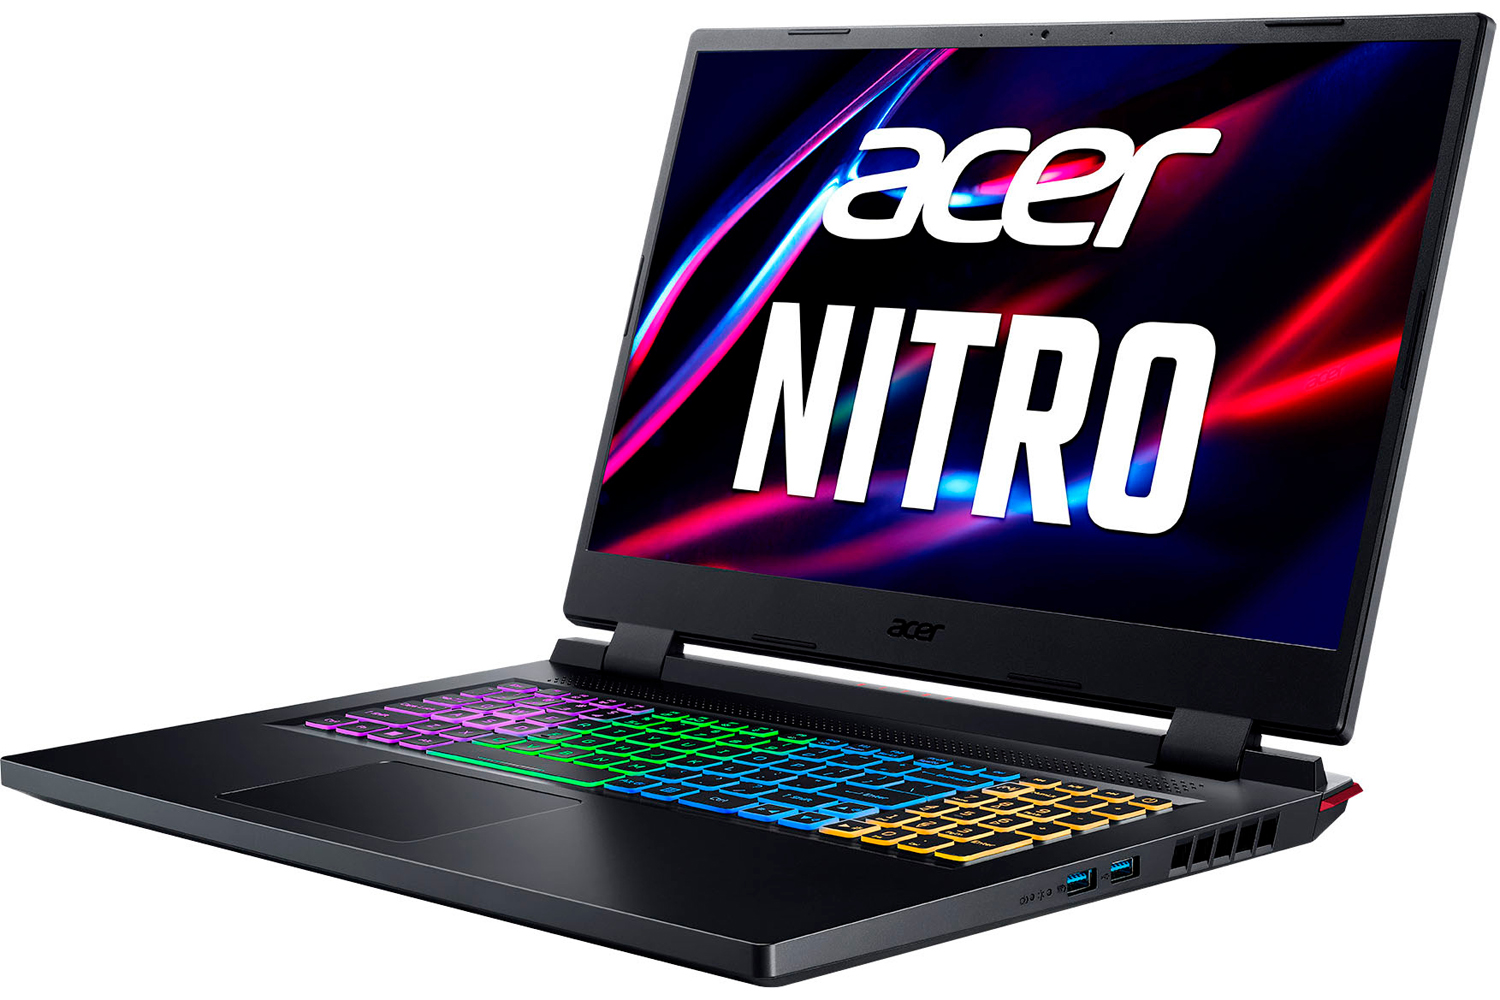 O laptop para jogos Acer Nitro 5 17 em um fundo branco.